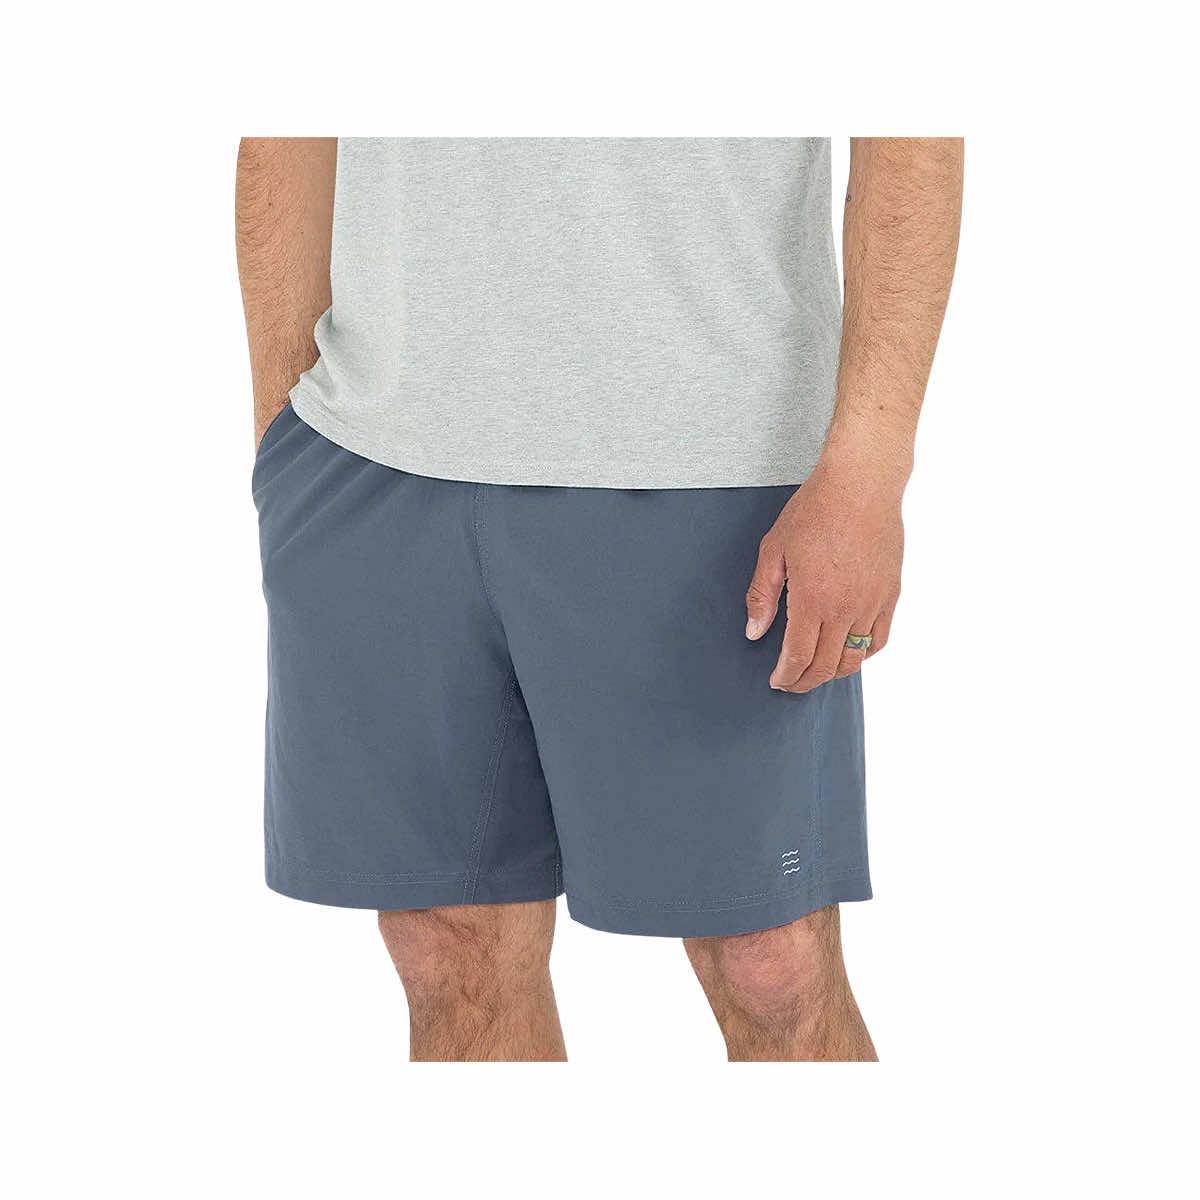 aurola shorts spandex - Gem